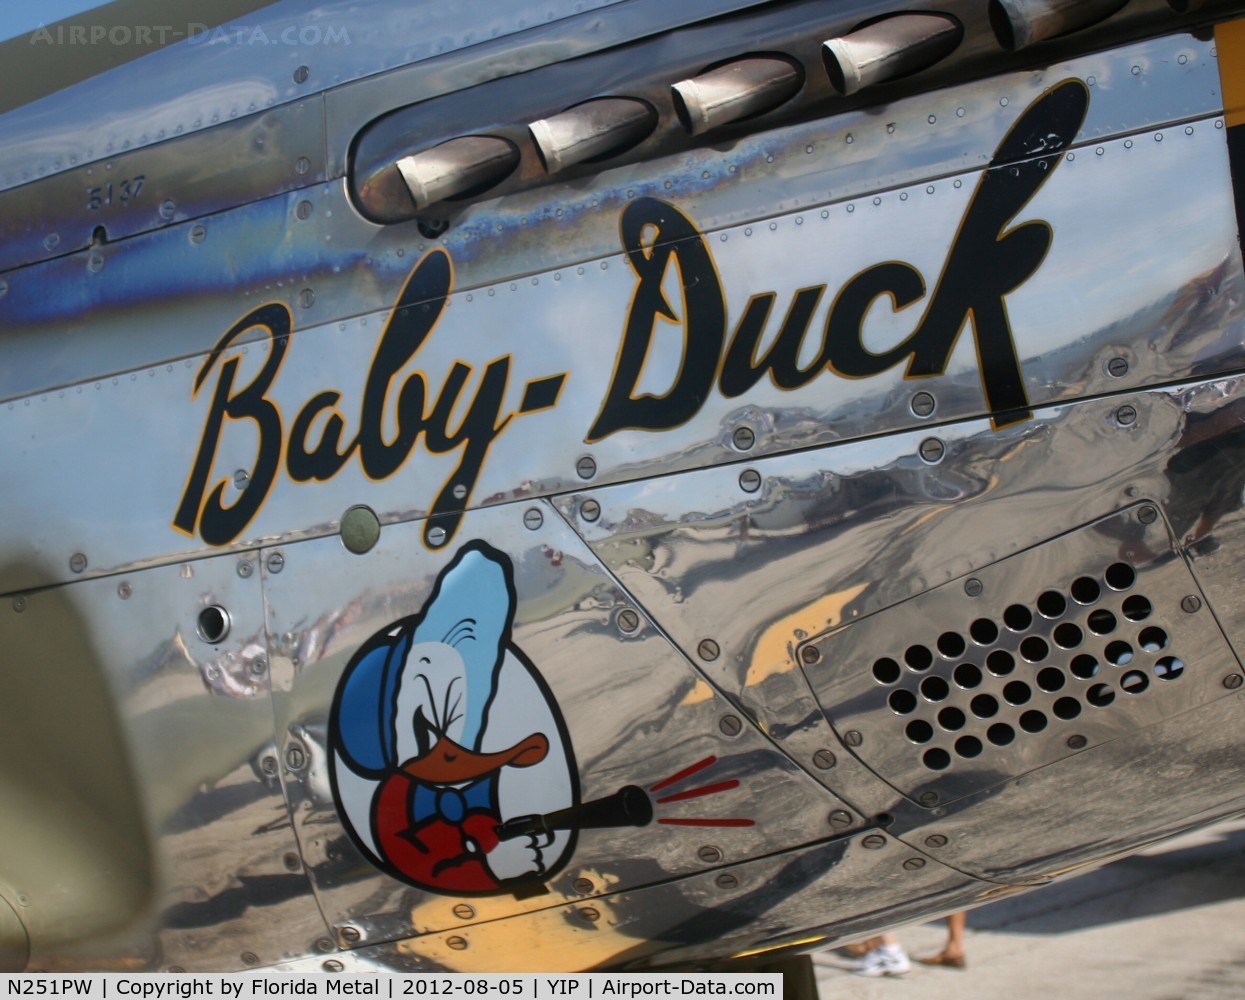 N251PW, 1944 North American P-51D Mustang C/N 122-31945, Baby Duck